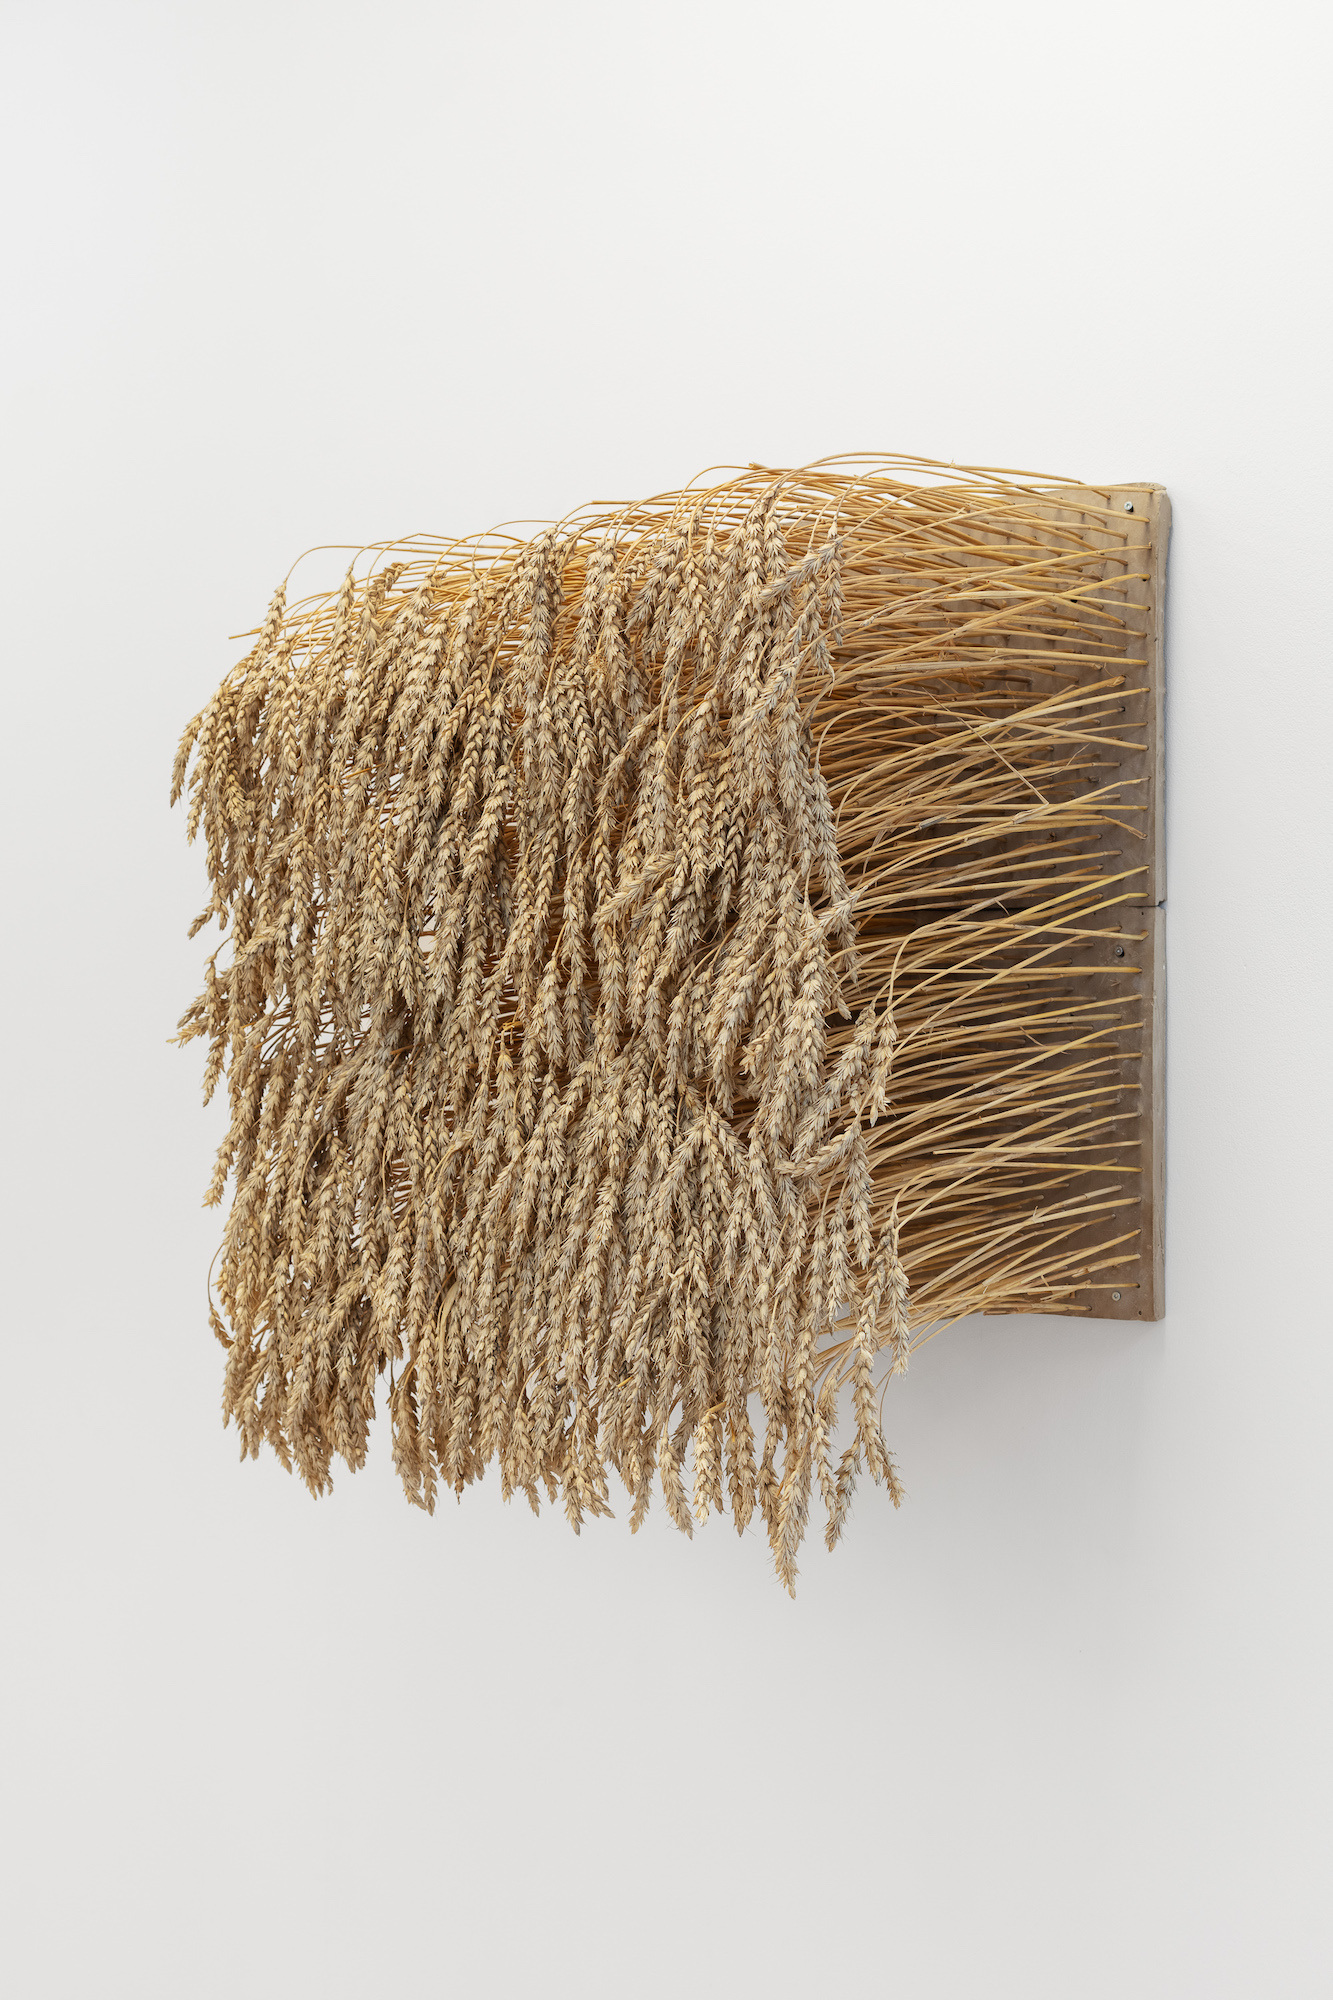 Sidsel Bonde, Aks i Ã¸yehÃ¸yde, 2021, Wheat, clay, 60 x 60 x 40 cm